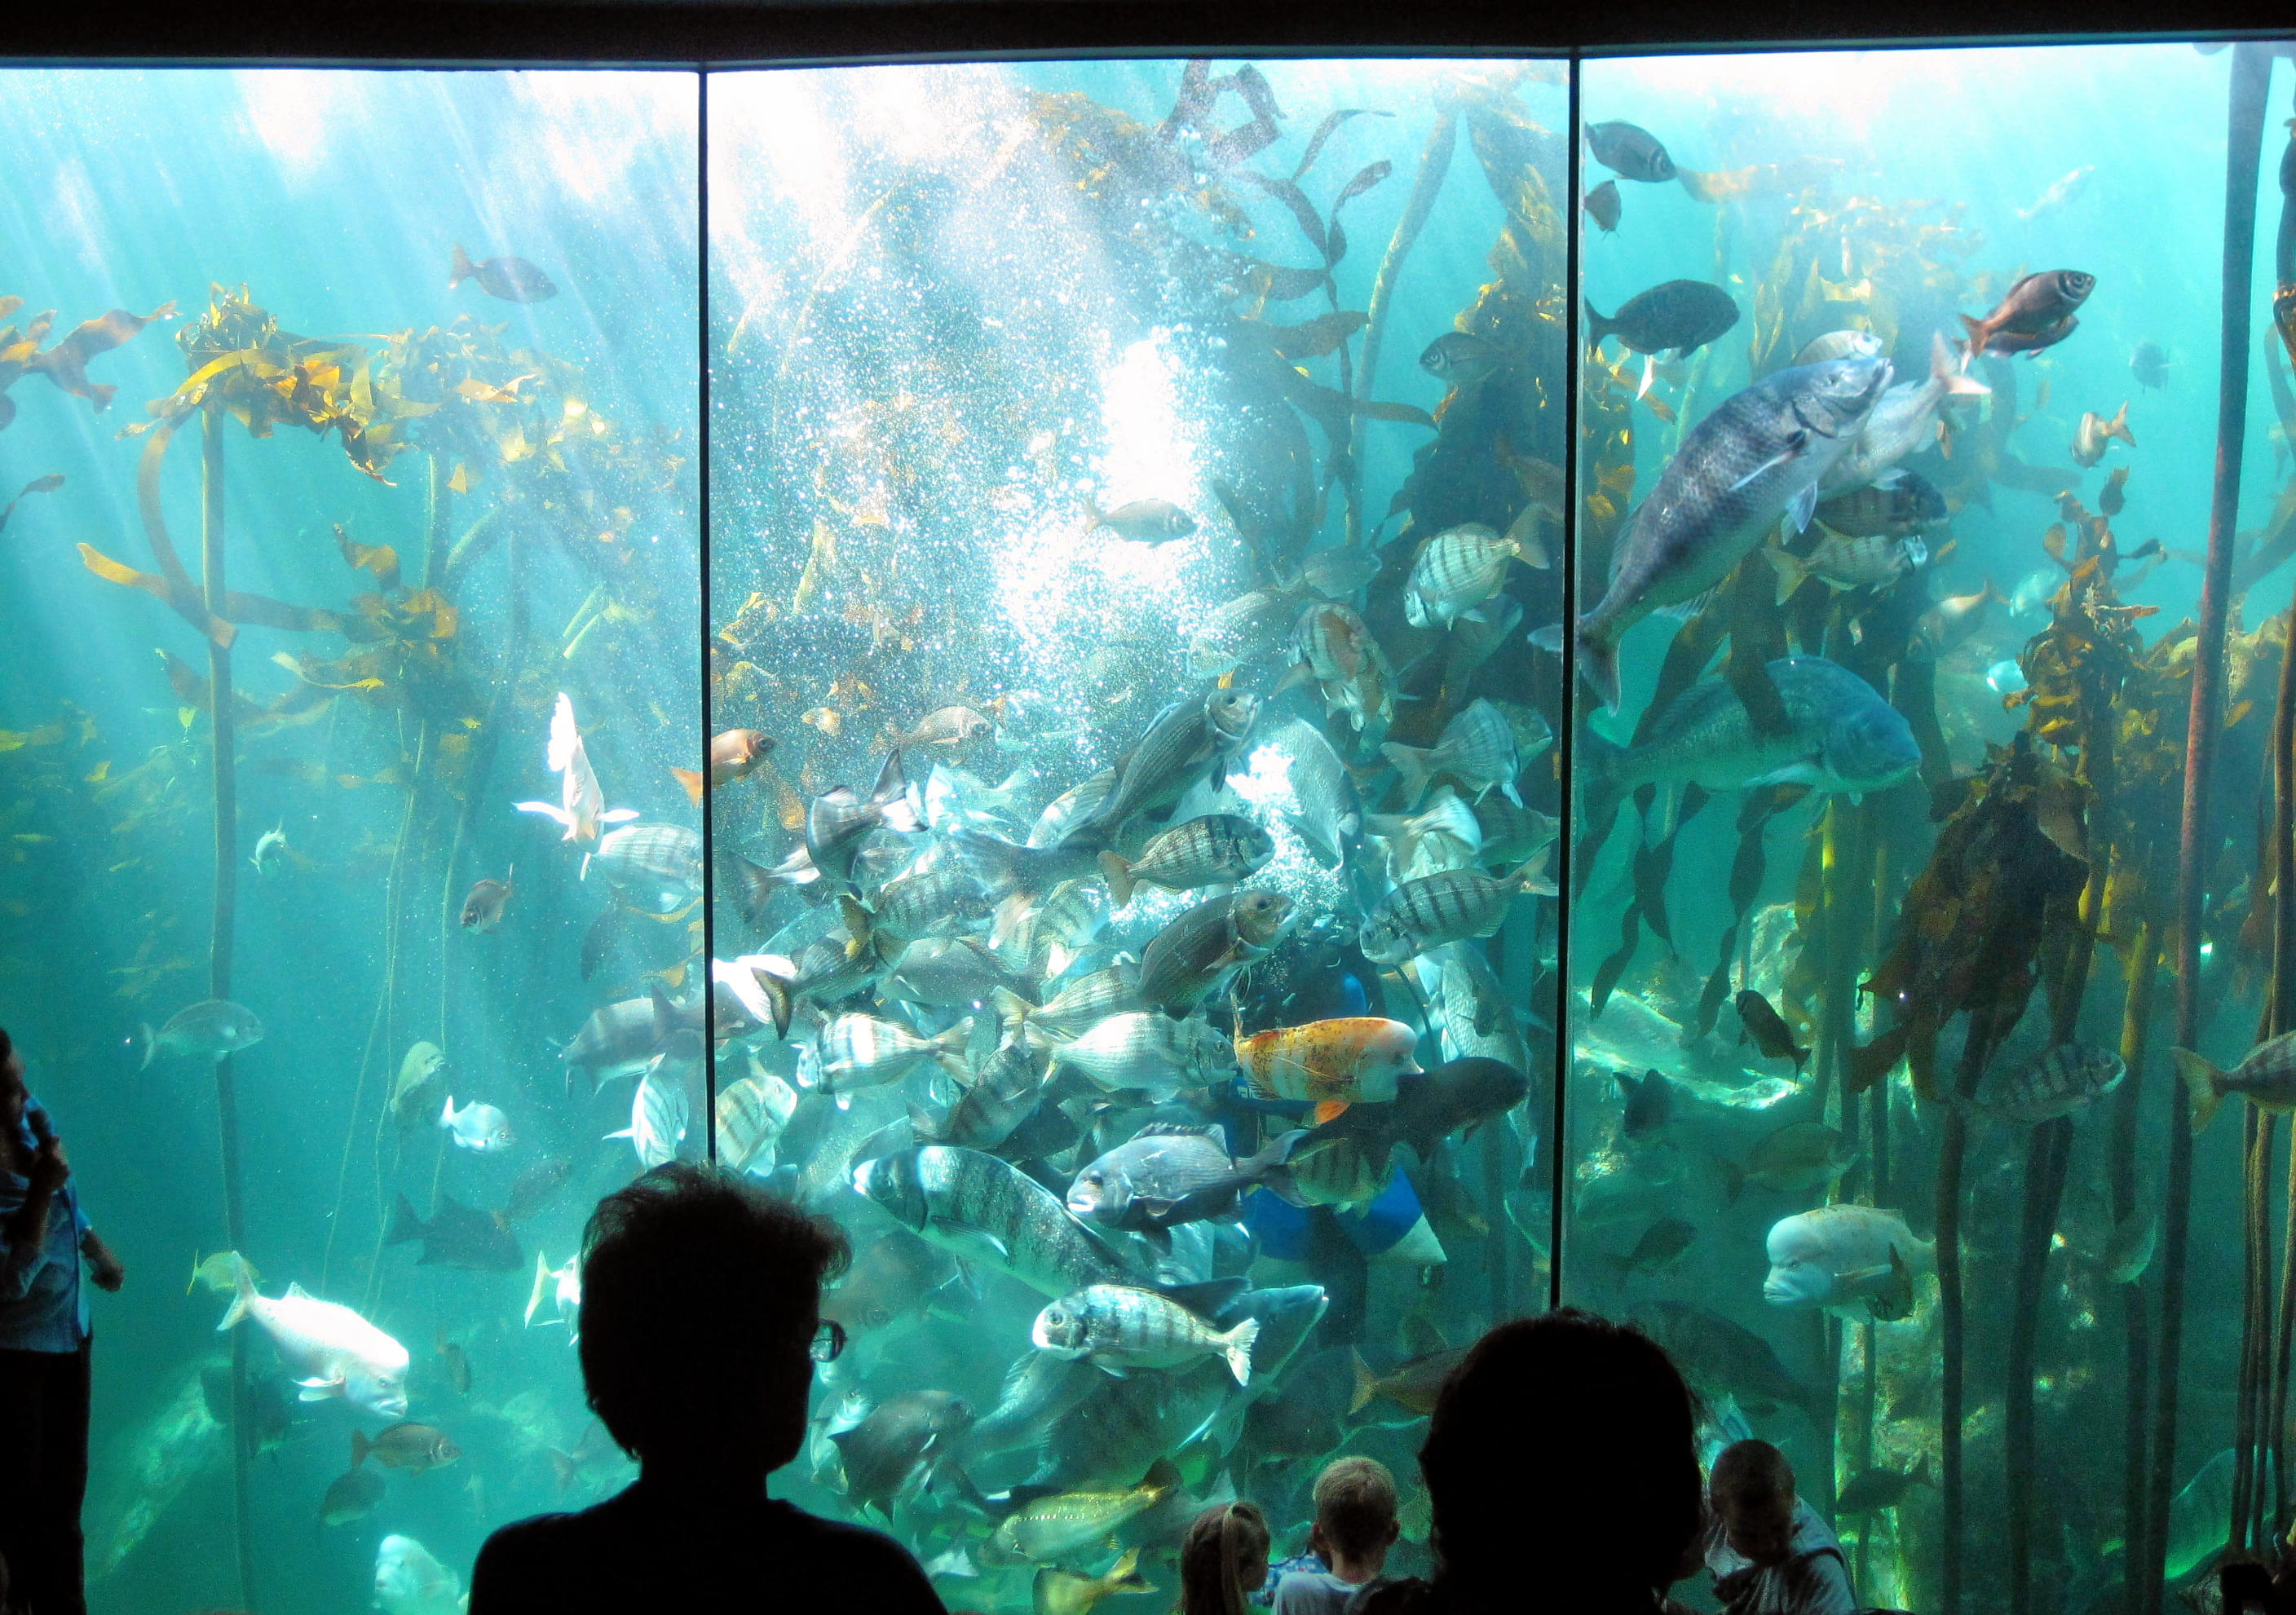 Two Oceans Aquarium Overview